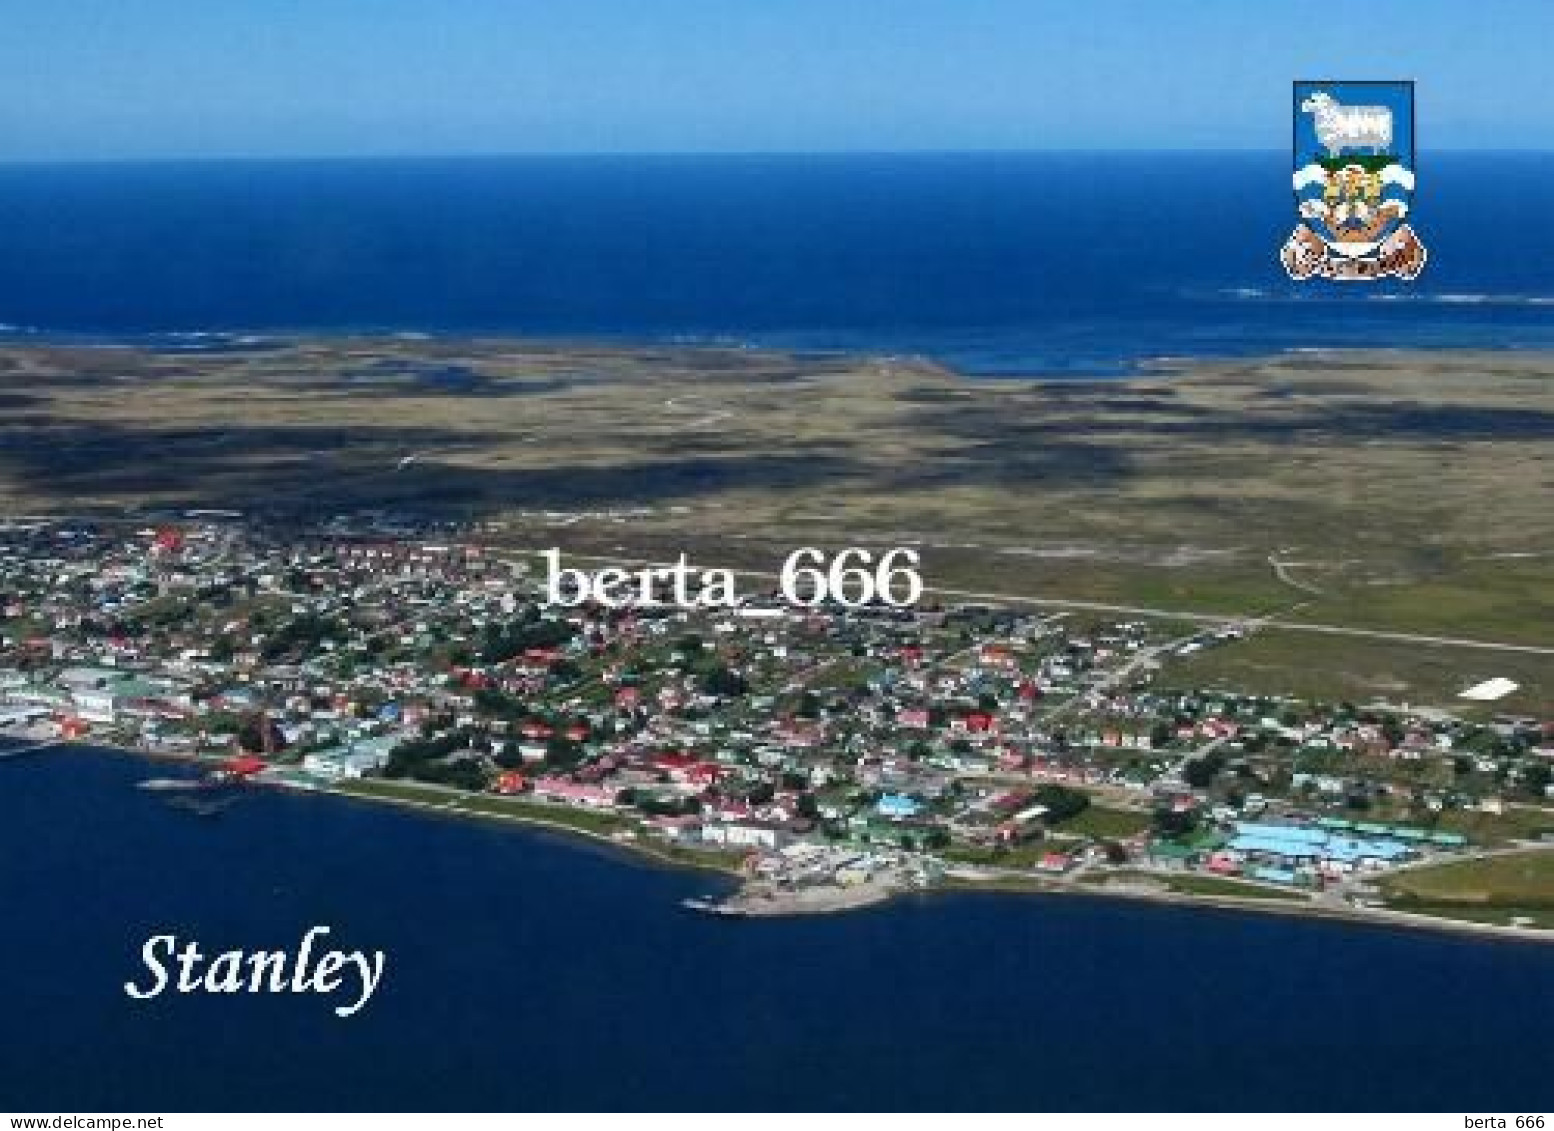 Falklands Islands Stanley Aerial View Malvinas New Postcard - Falkland Islands